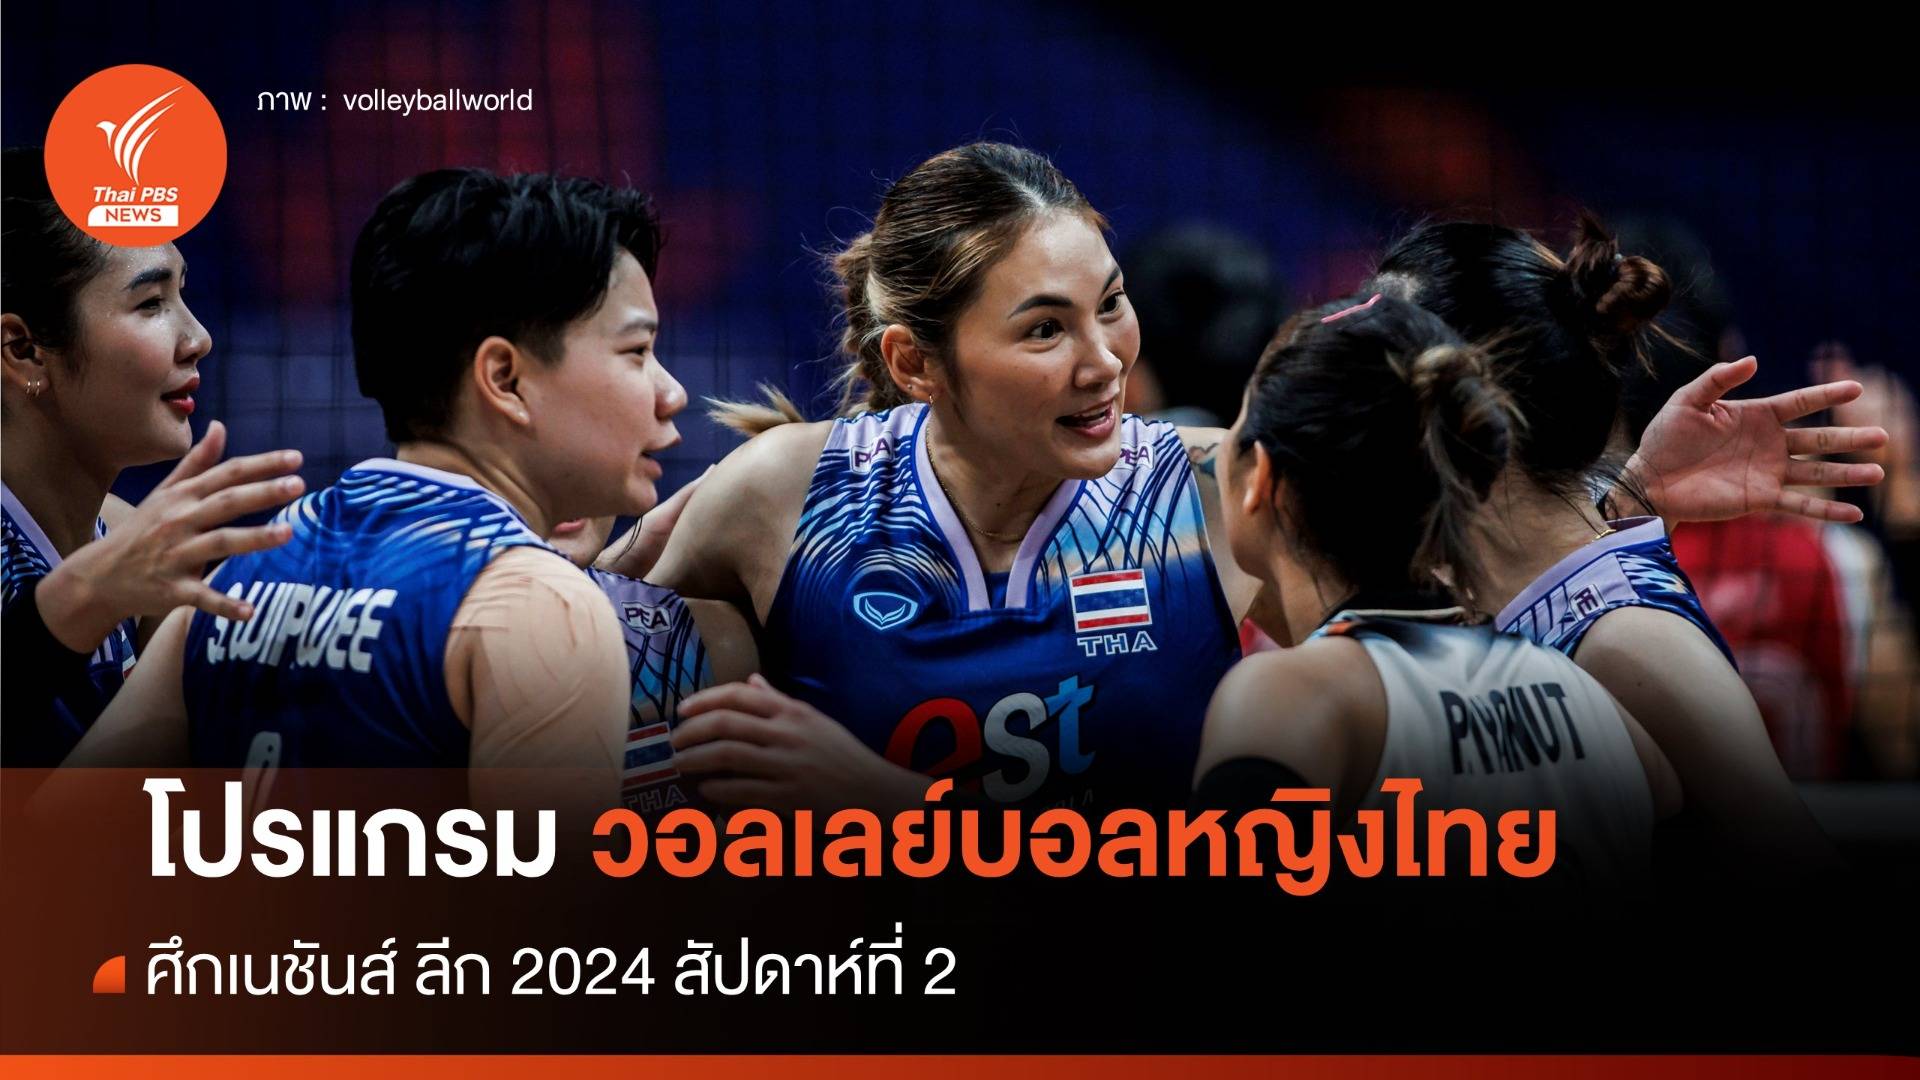 โปรแกรมวอลเลย์บอลหญิงไทย ศึกเนชันส์ ลีก 2024 สัปดาห์ 2